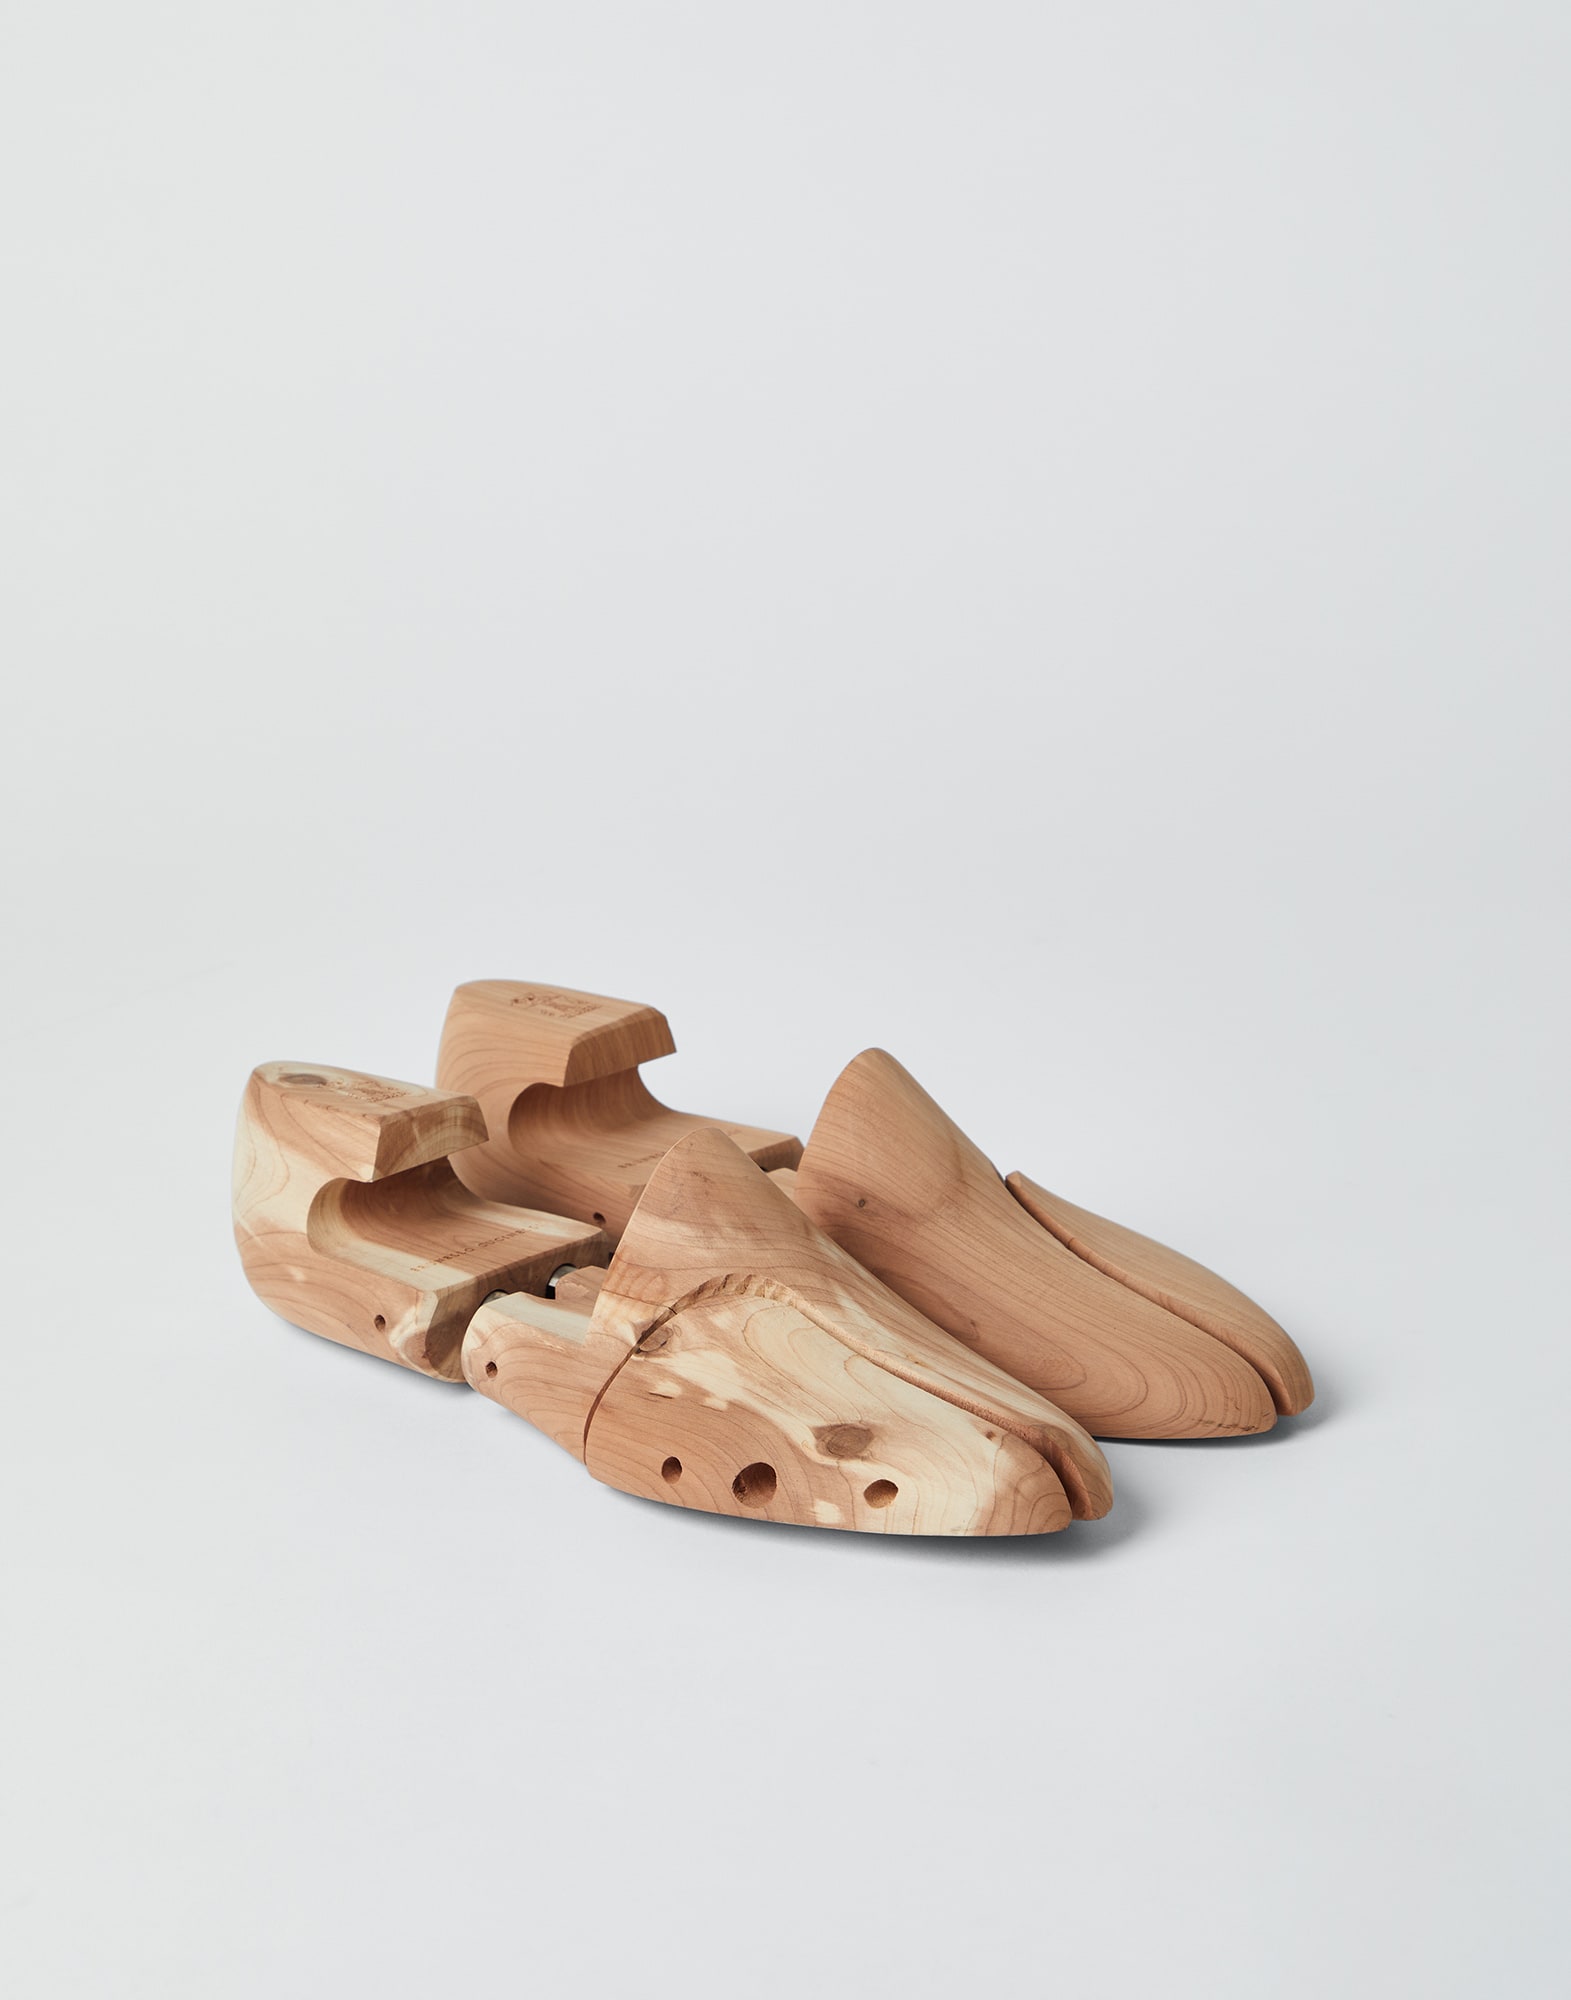 Колодка для обуви из кедрового дерева